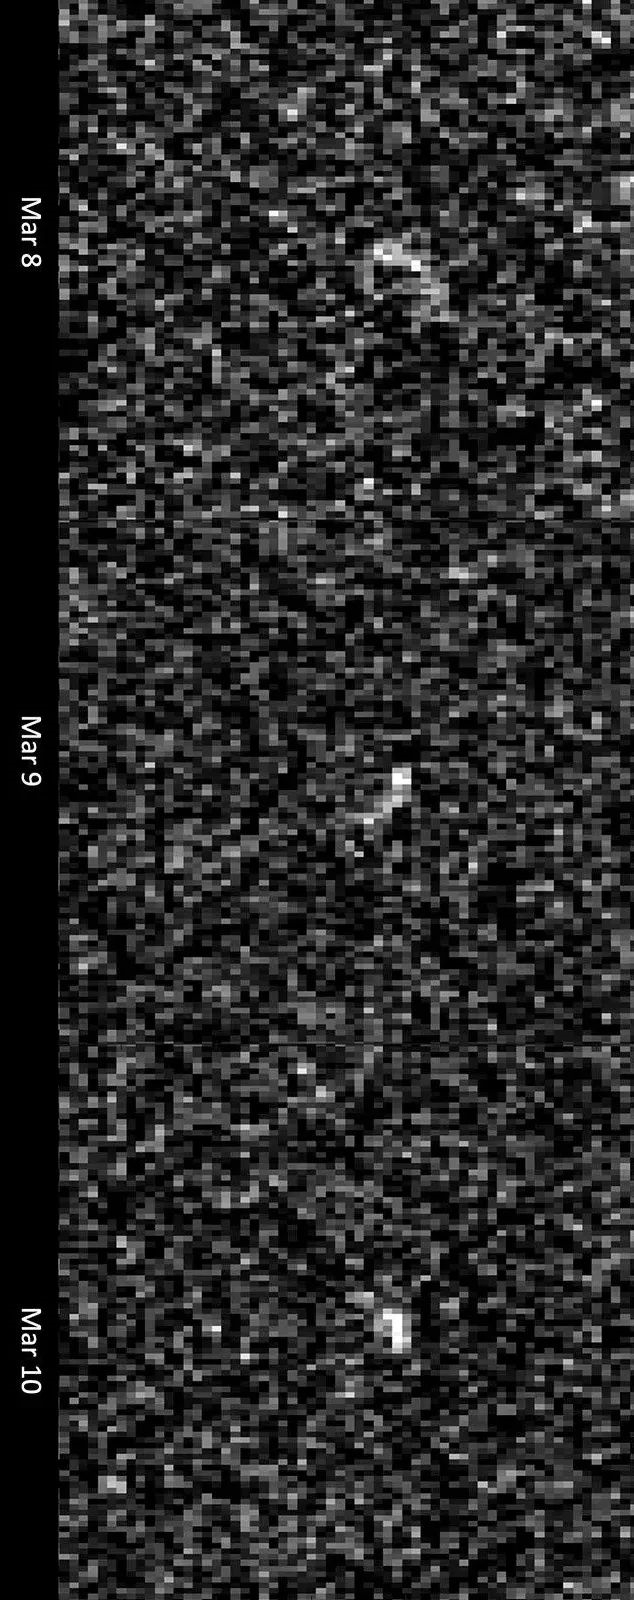 305米的小行星“毀神星”5年後貼臉擦過地球：不排除撞擊